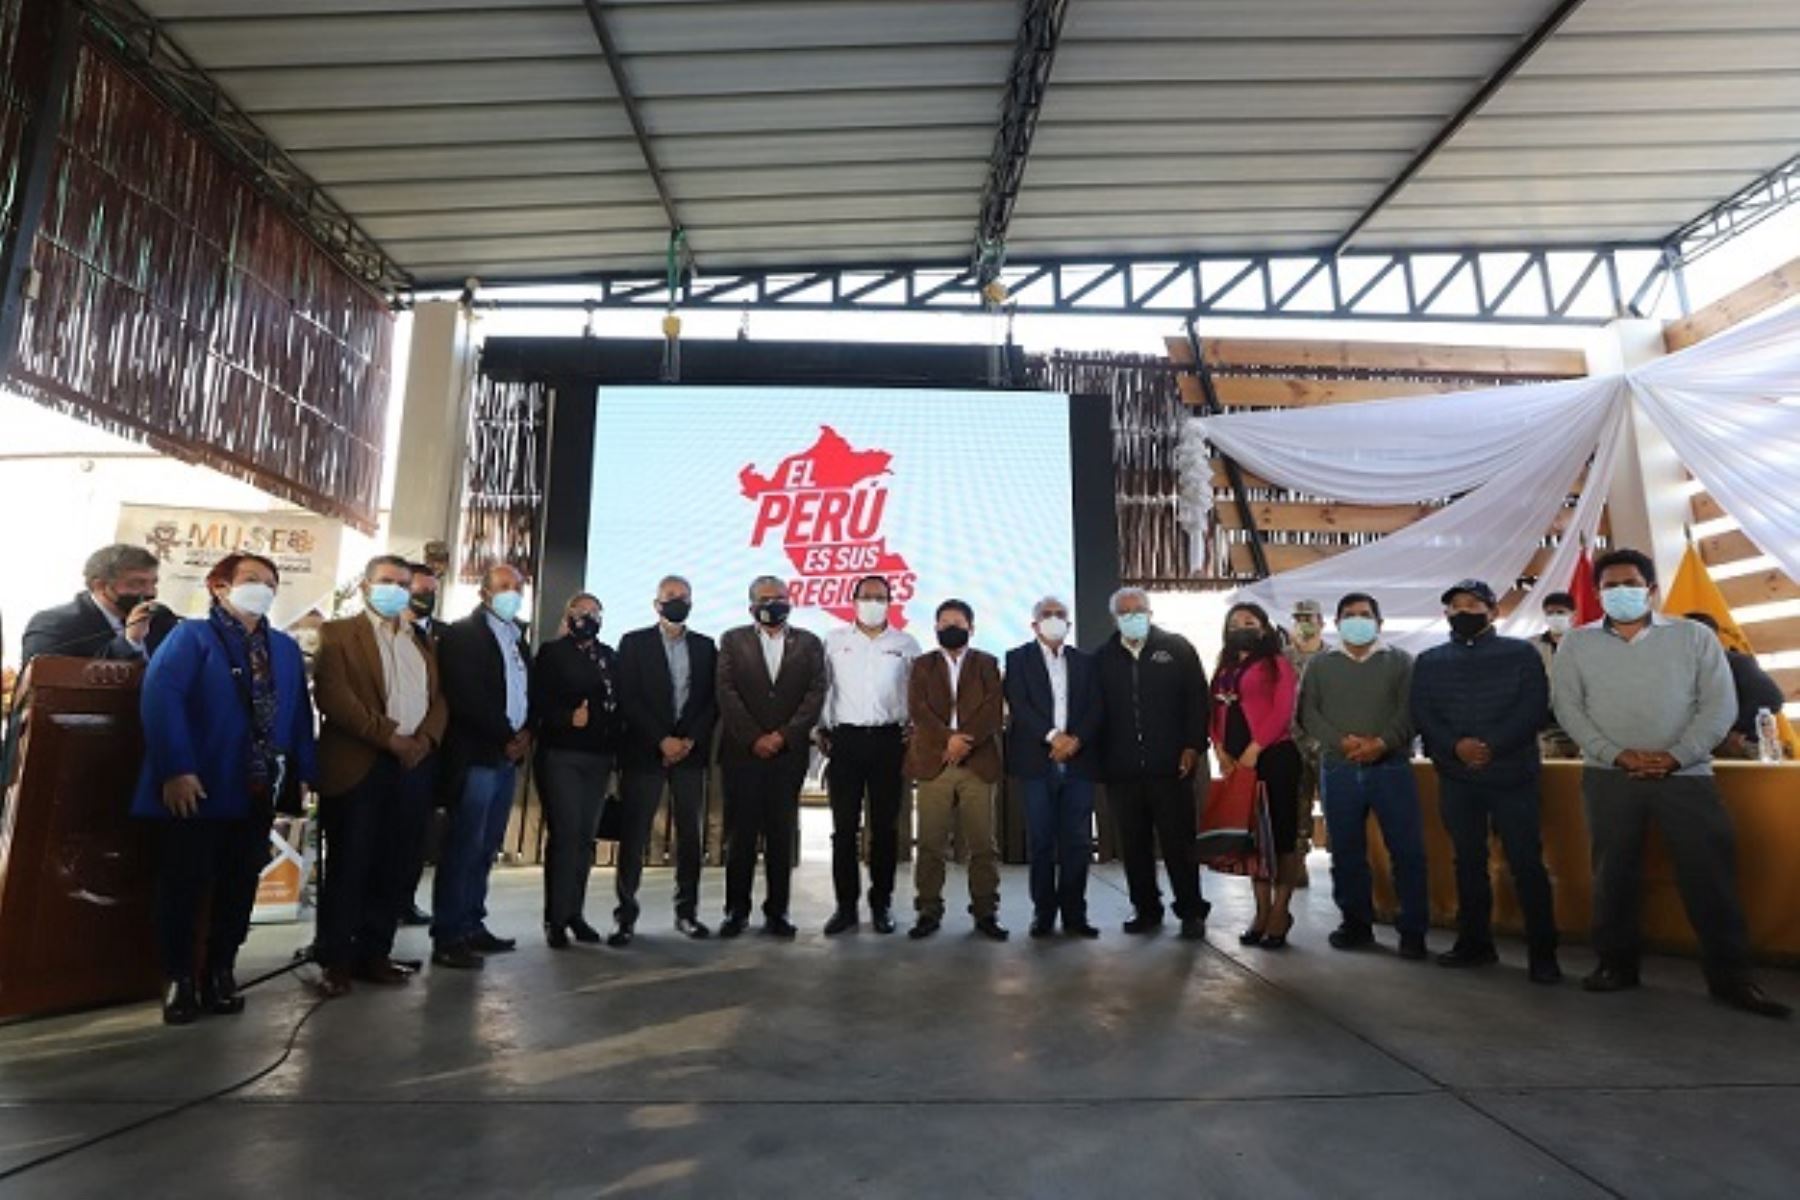 Lanzamiento de la campaña "El Perú es sus regiones", con la participación del ministro de Comercio Exterior y Turismo, Roberto Sánchez. Foto: Cortesía.